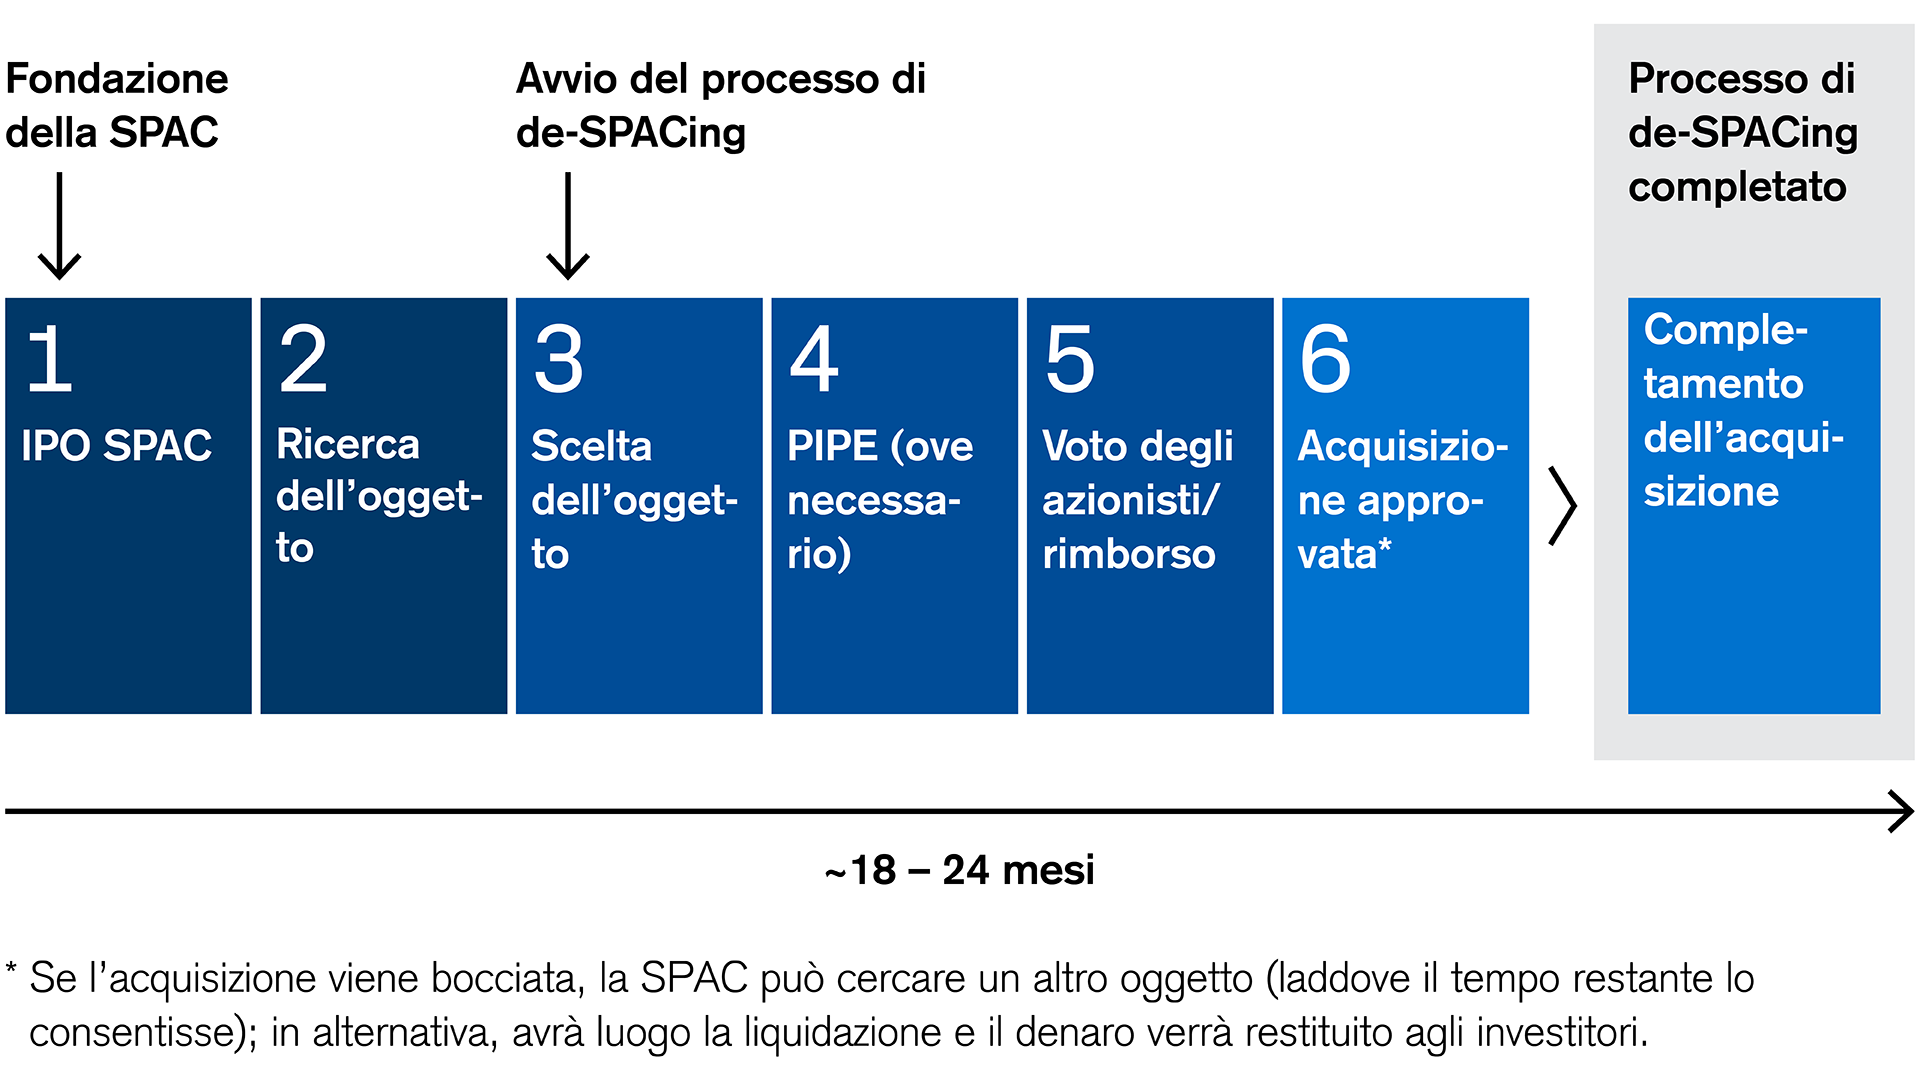 SPAC: processo di sei fasi dalla fondazione all’acquisizione